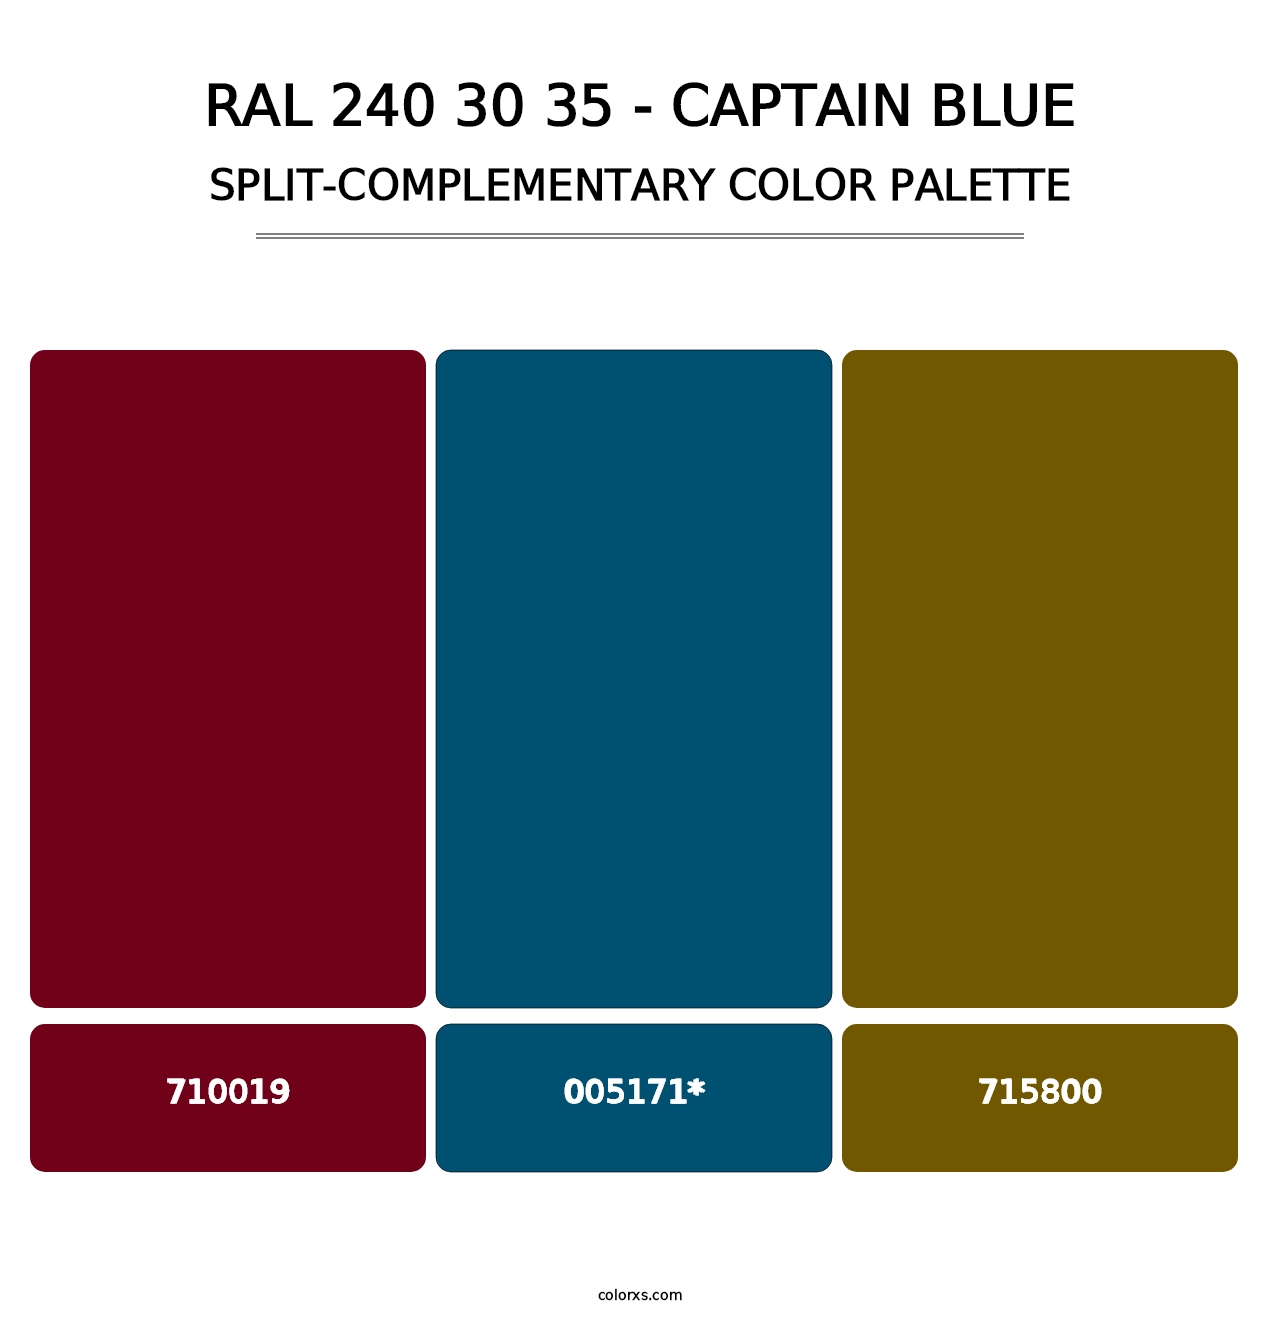 RAL 240 30 35 - Captain Blue - Split-Complementary Color Palette